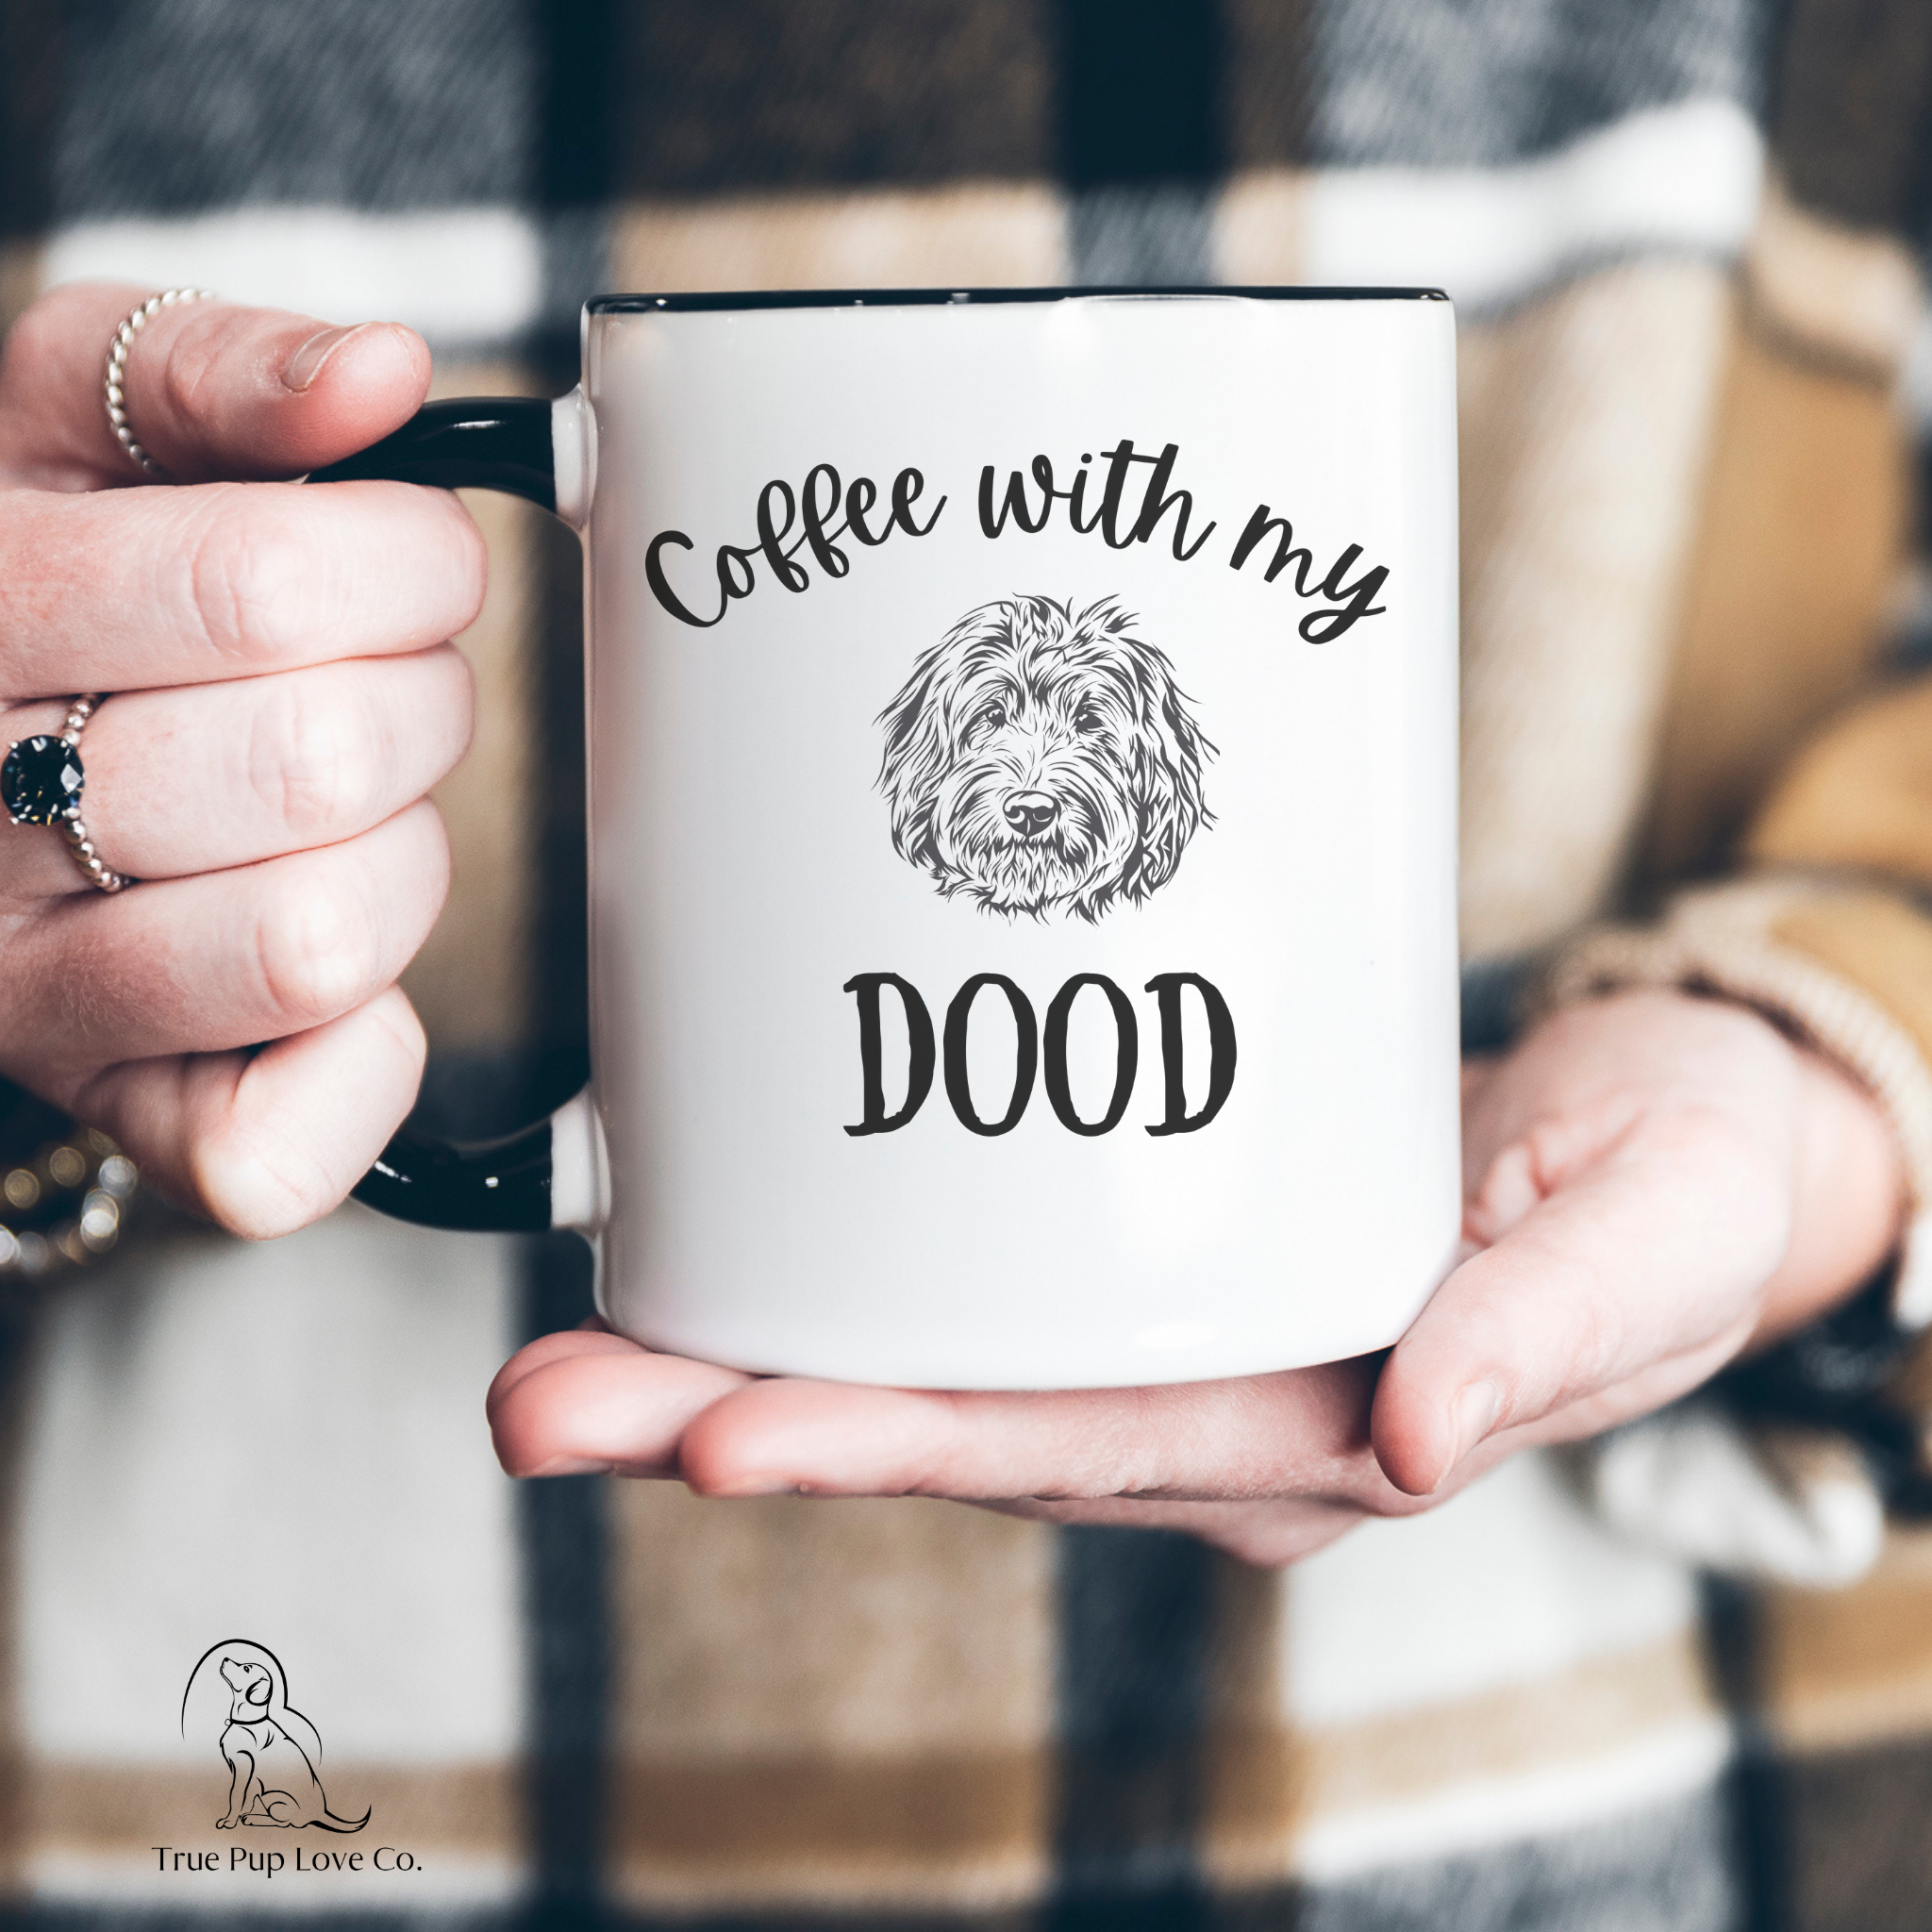 Doodle Mom Mug - Goldendoodle, Labradoodle – Sweet Mint Handmade Goods